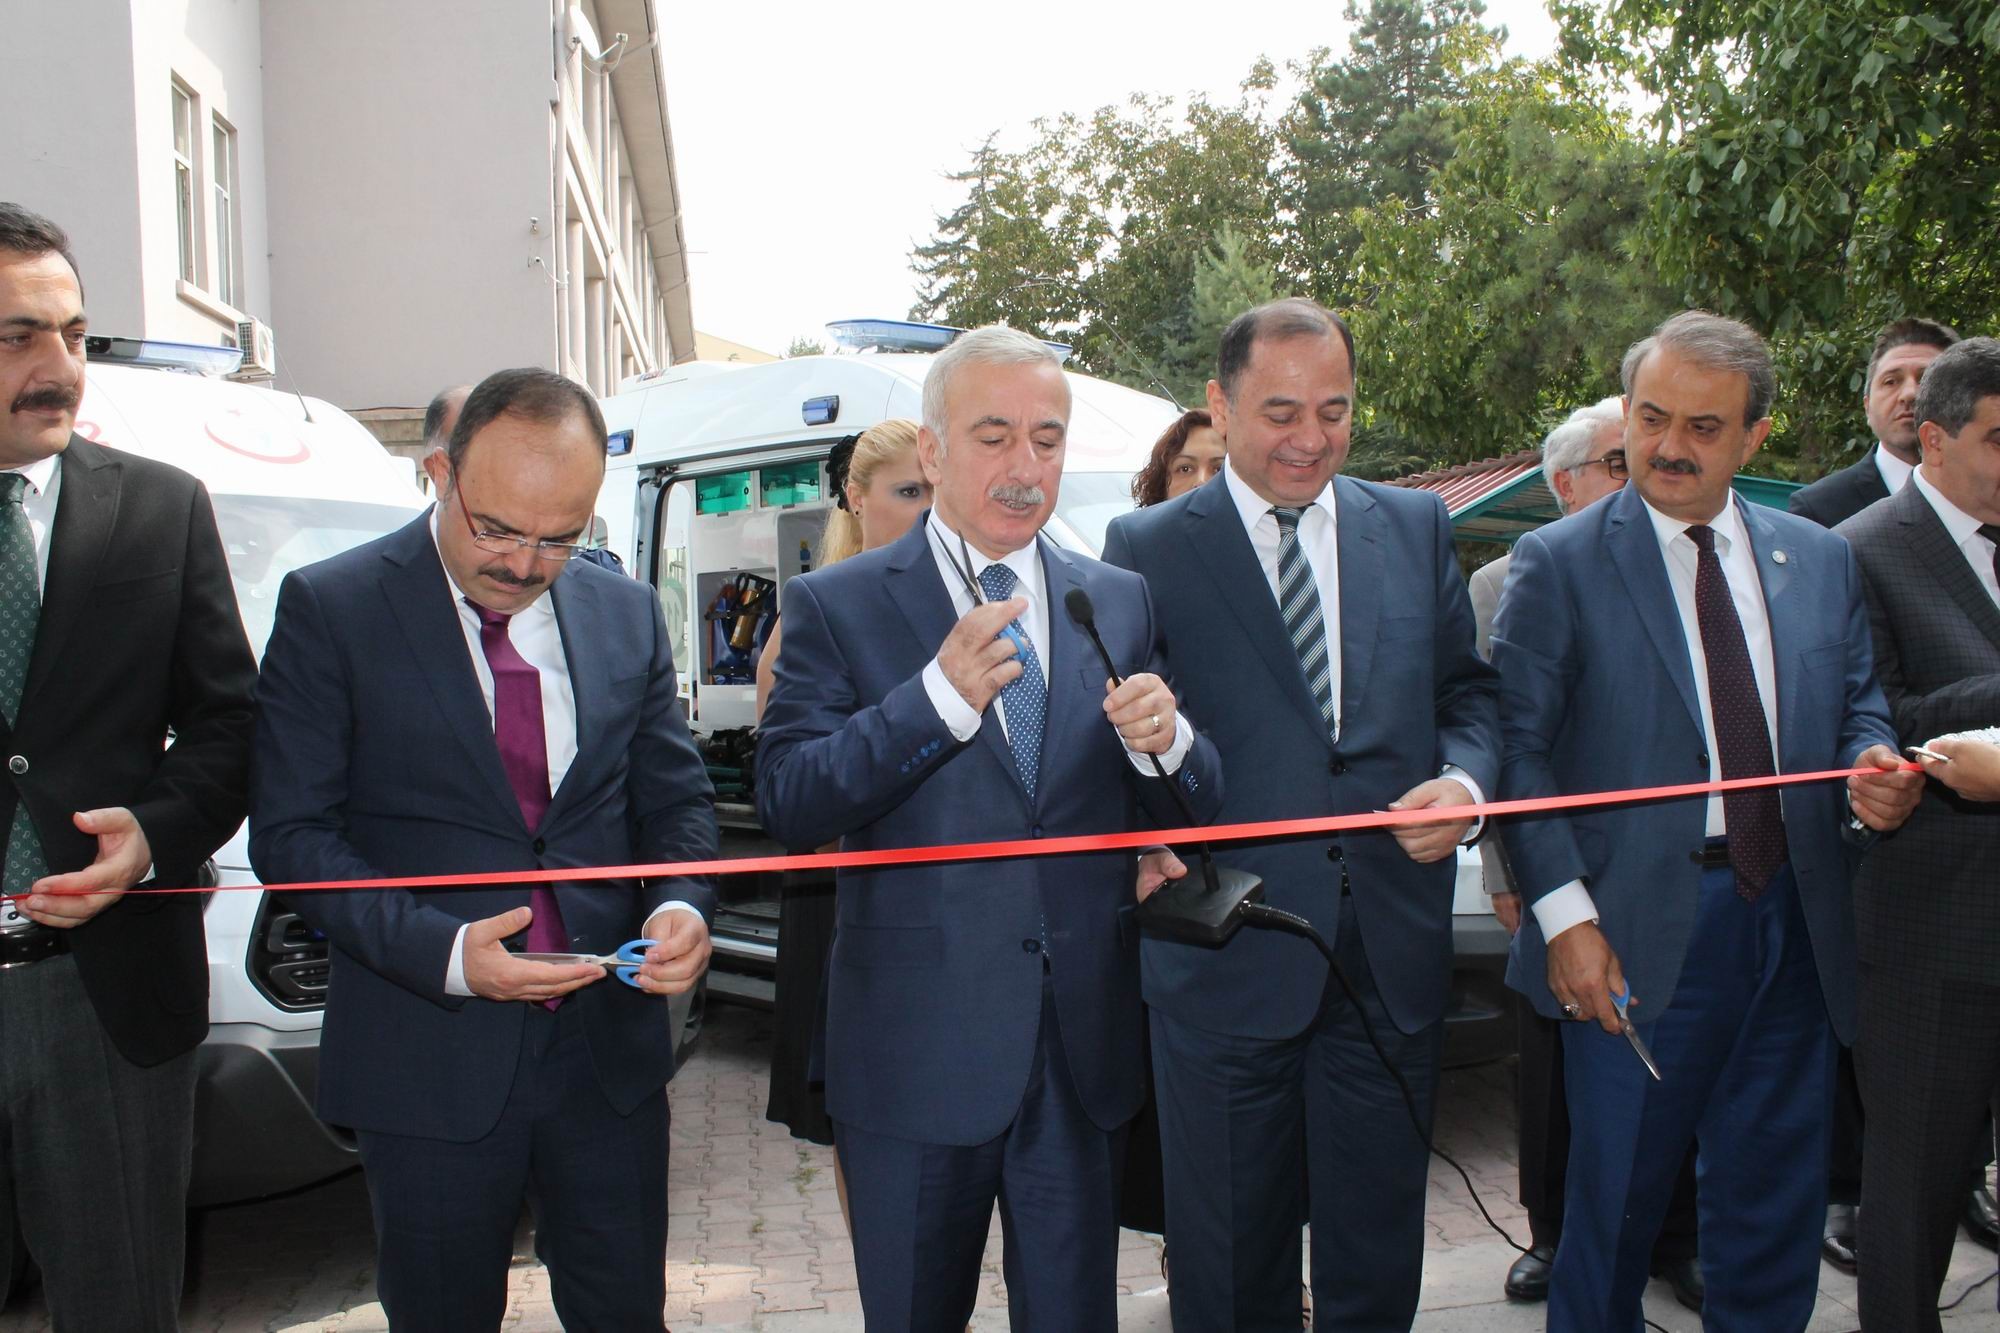 Kayseri’de 5 yeni ambulans hizmet verecek